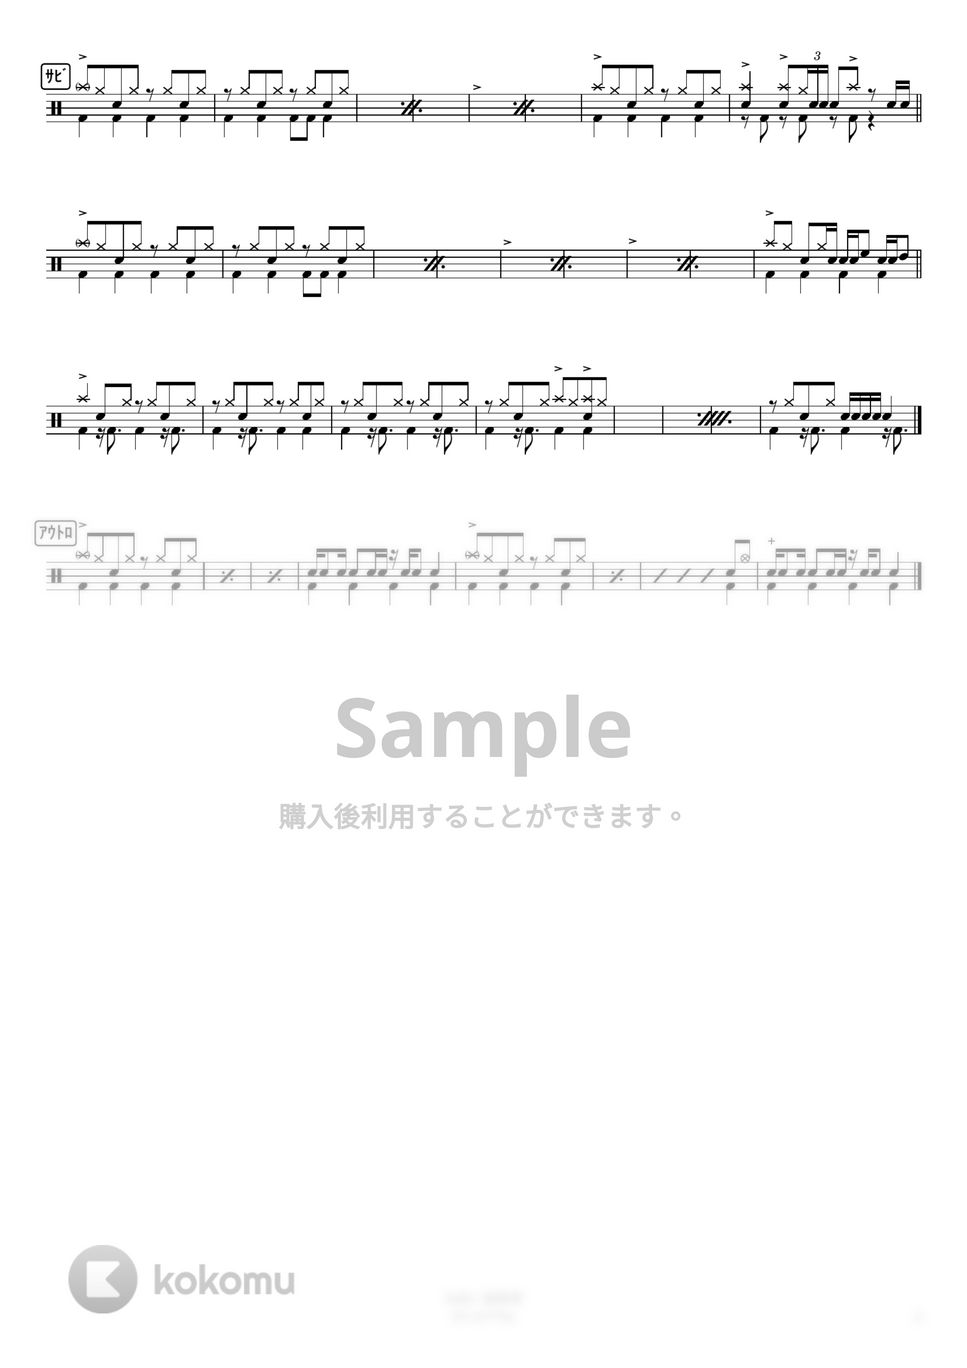 星野源 - SUN (コンパクト) by さくっとドラム